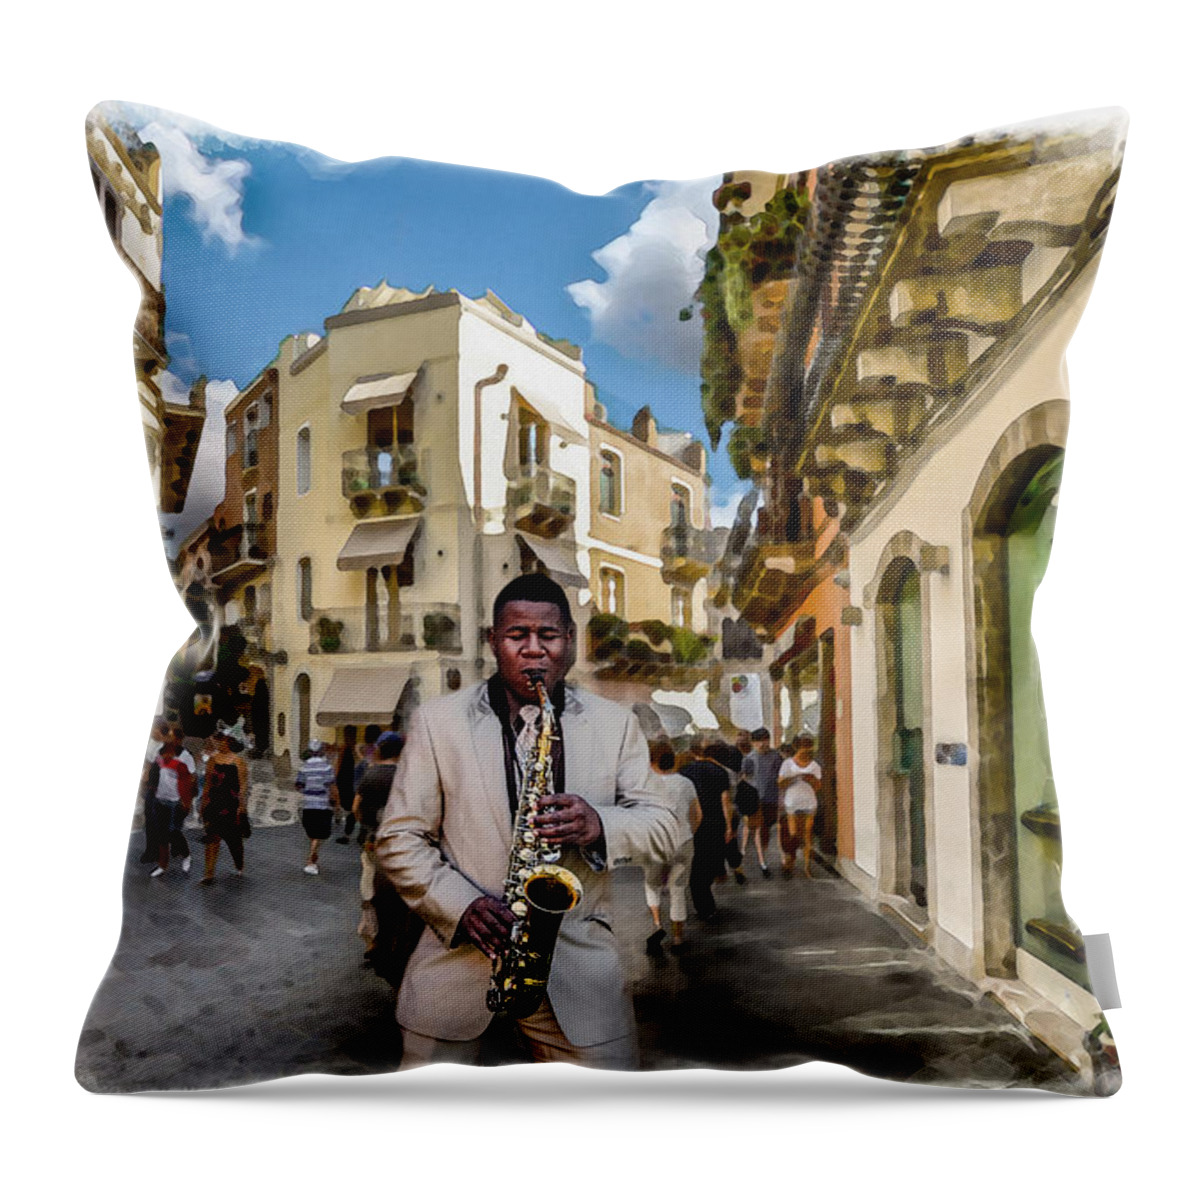 Street Music Throw Pillow featuring the digital art Street Music. Saxophone. by Alex Mir